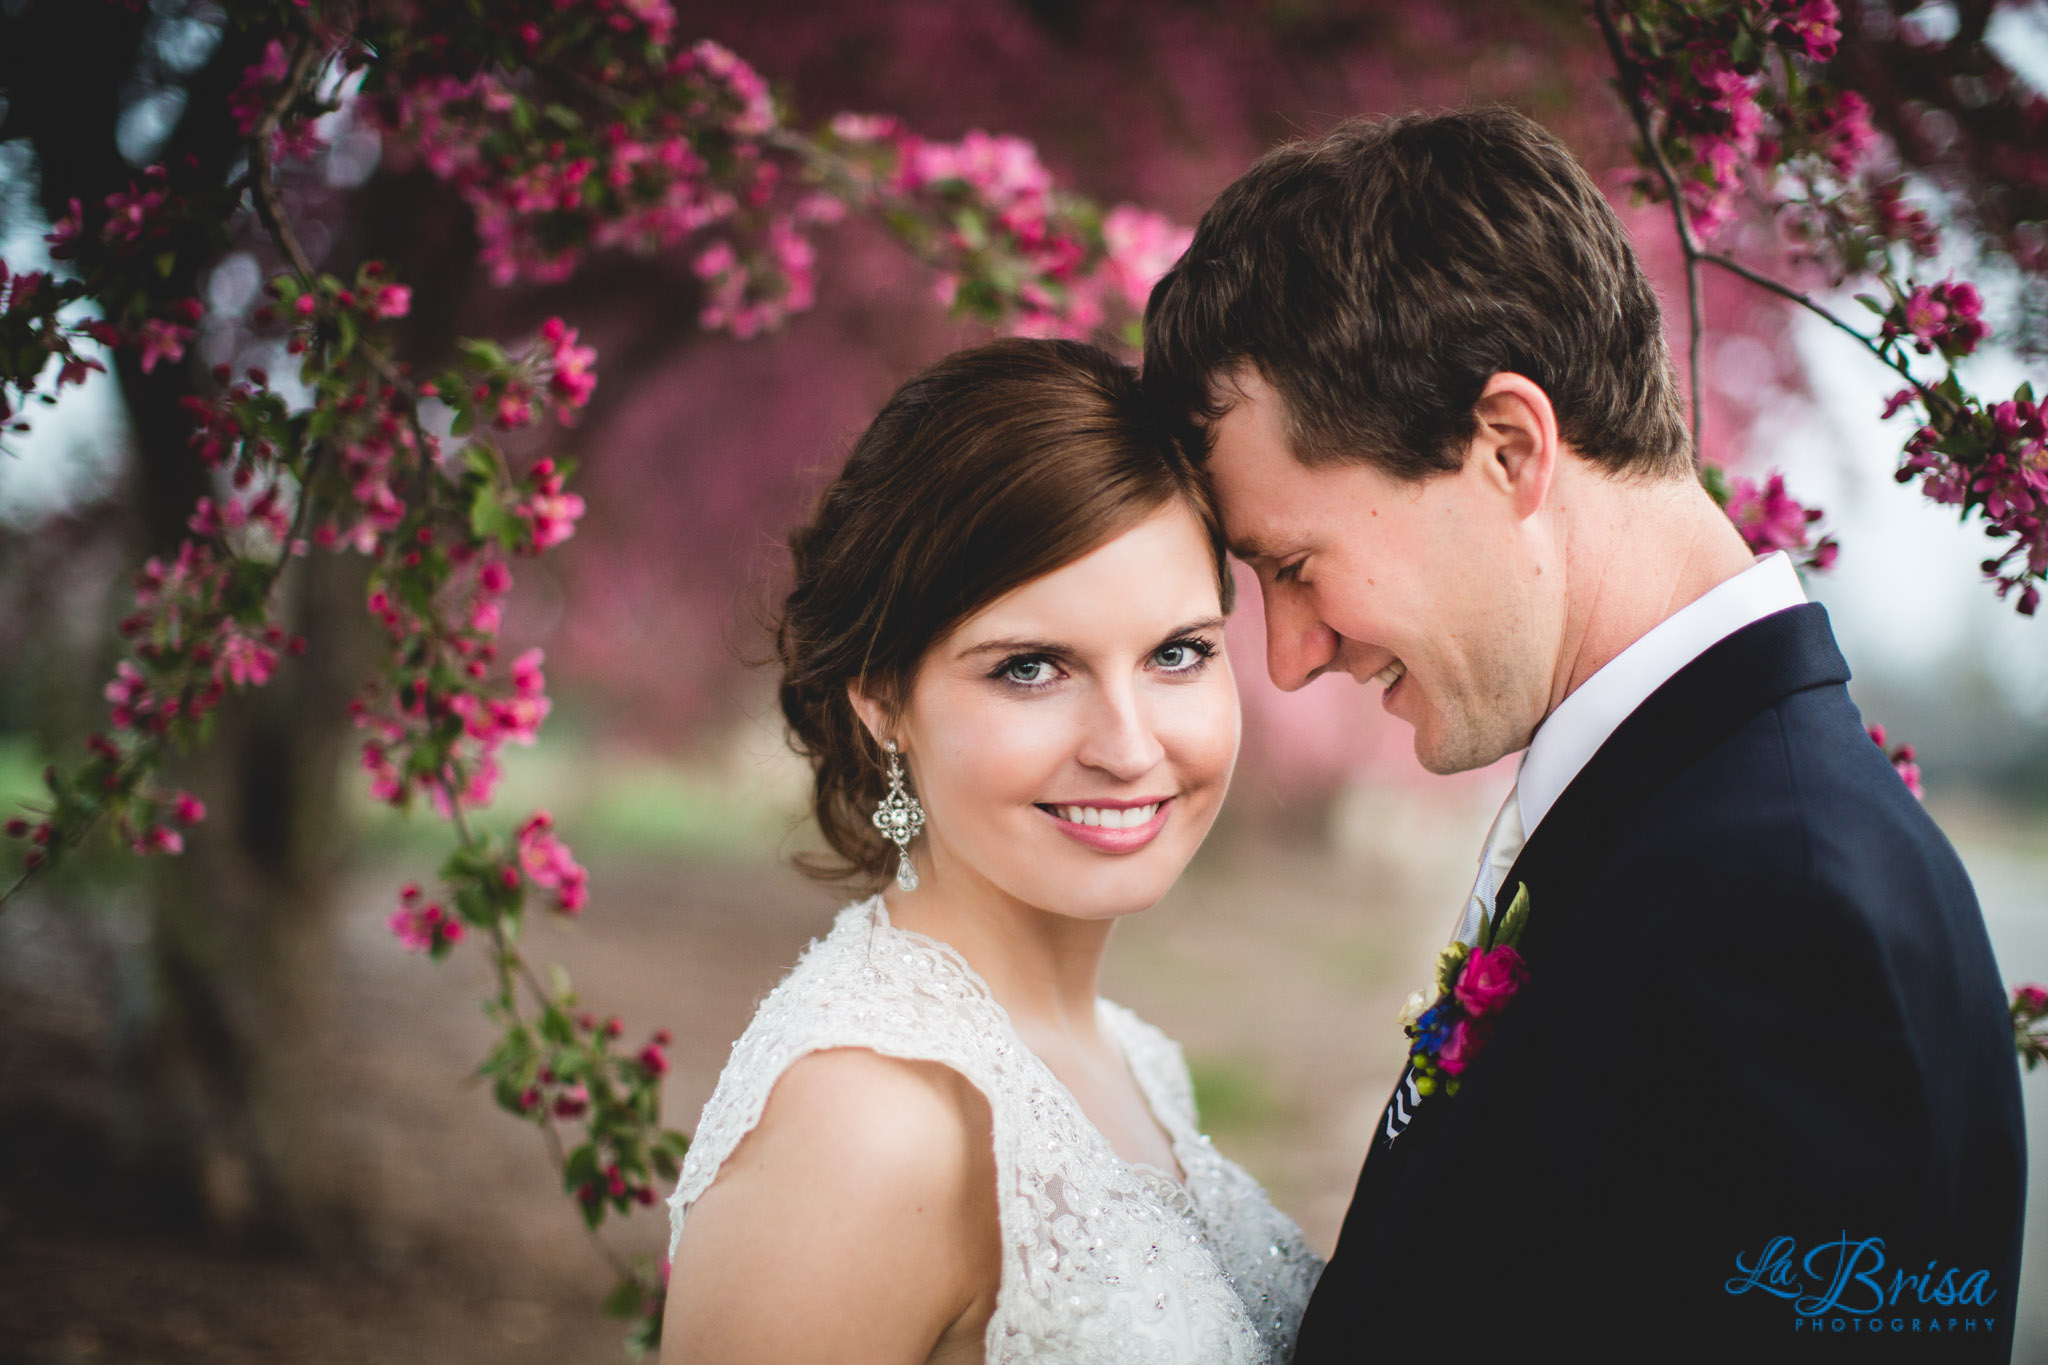 Kylee & Jason Preview | Wedding Photography | Seneca, KS | Sarah Gudeman